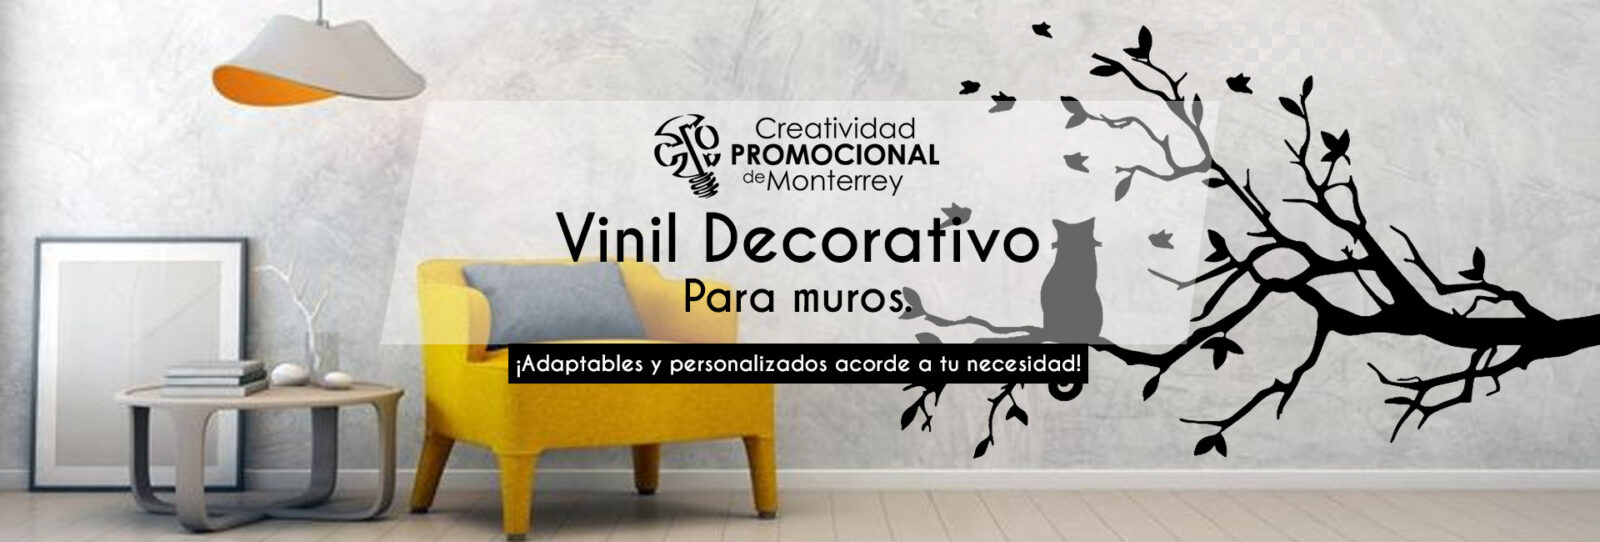 Vinil Decorativo - Creatividad Promocional de Monterrey